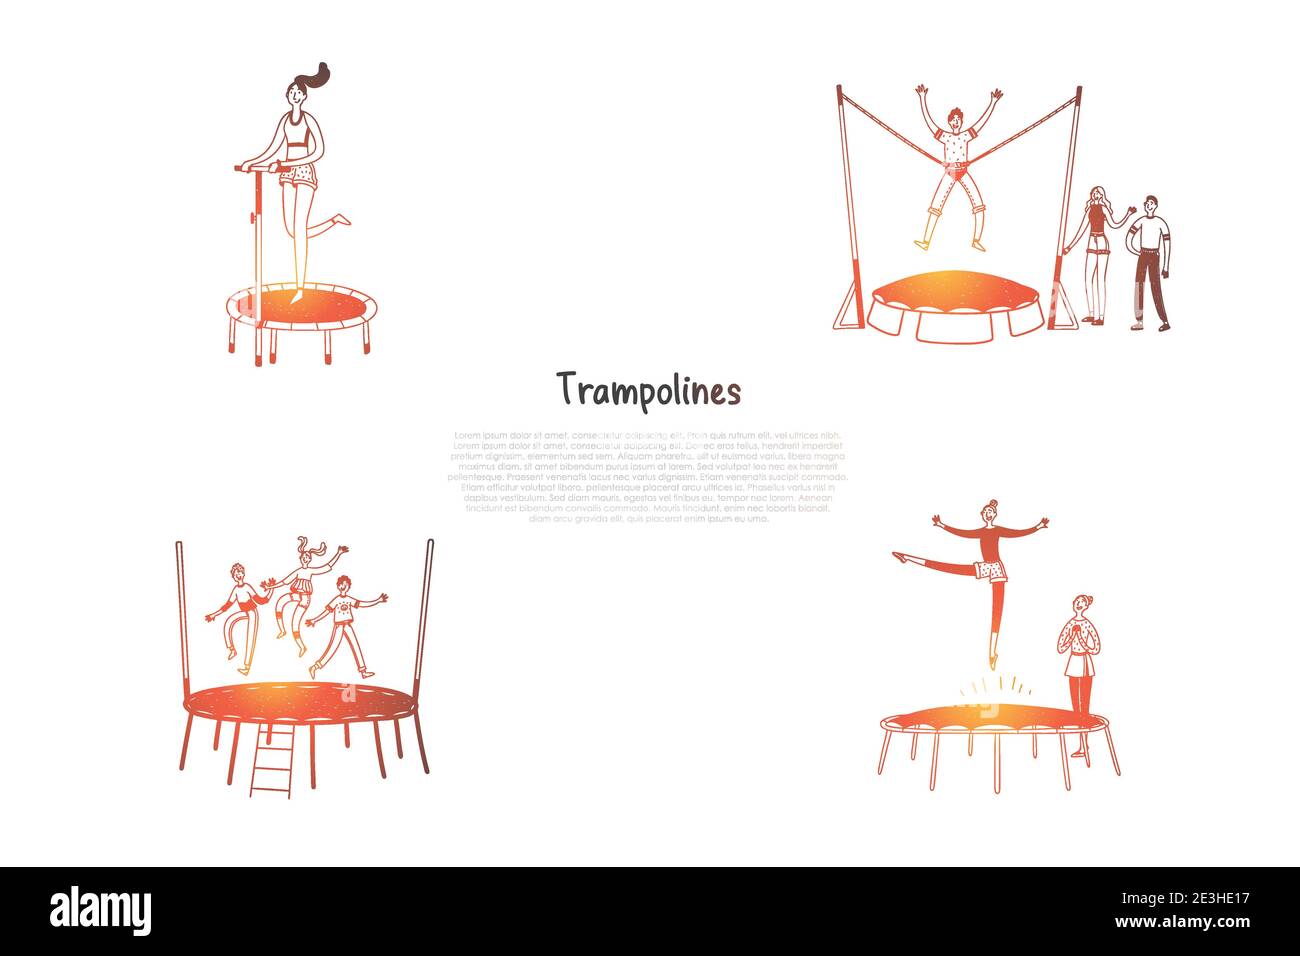 Trampoline - glückliche Menschen springen auf Trampoline  Vektor-Konzept-Set. Von Hand gezeichnete Skizze isolierte Illustration  Stock-Vektorgrafik - Alamy